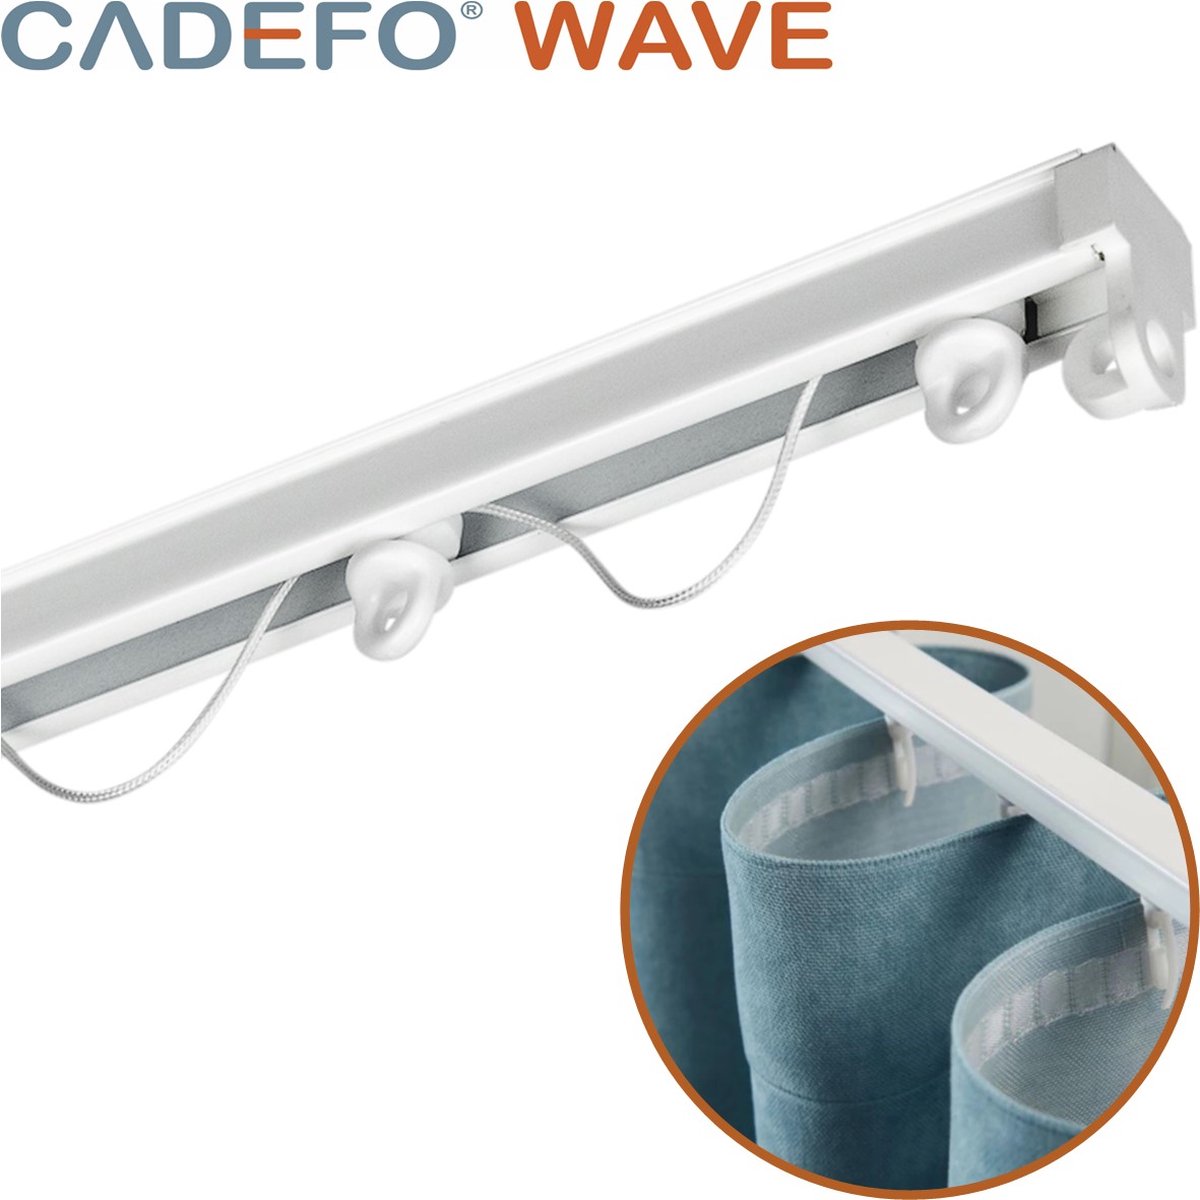 CADEFO WAVE (451 - 500 cm) Gordijnrails - Compleet op maat! - UIT 1 STUK - Leverbaar tot 6 meter - Plafondbevestiging - Lengte 490 cm